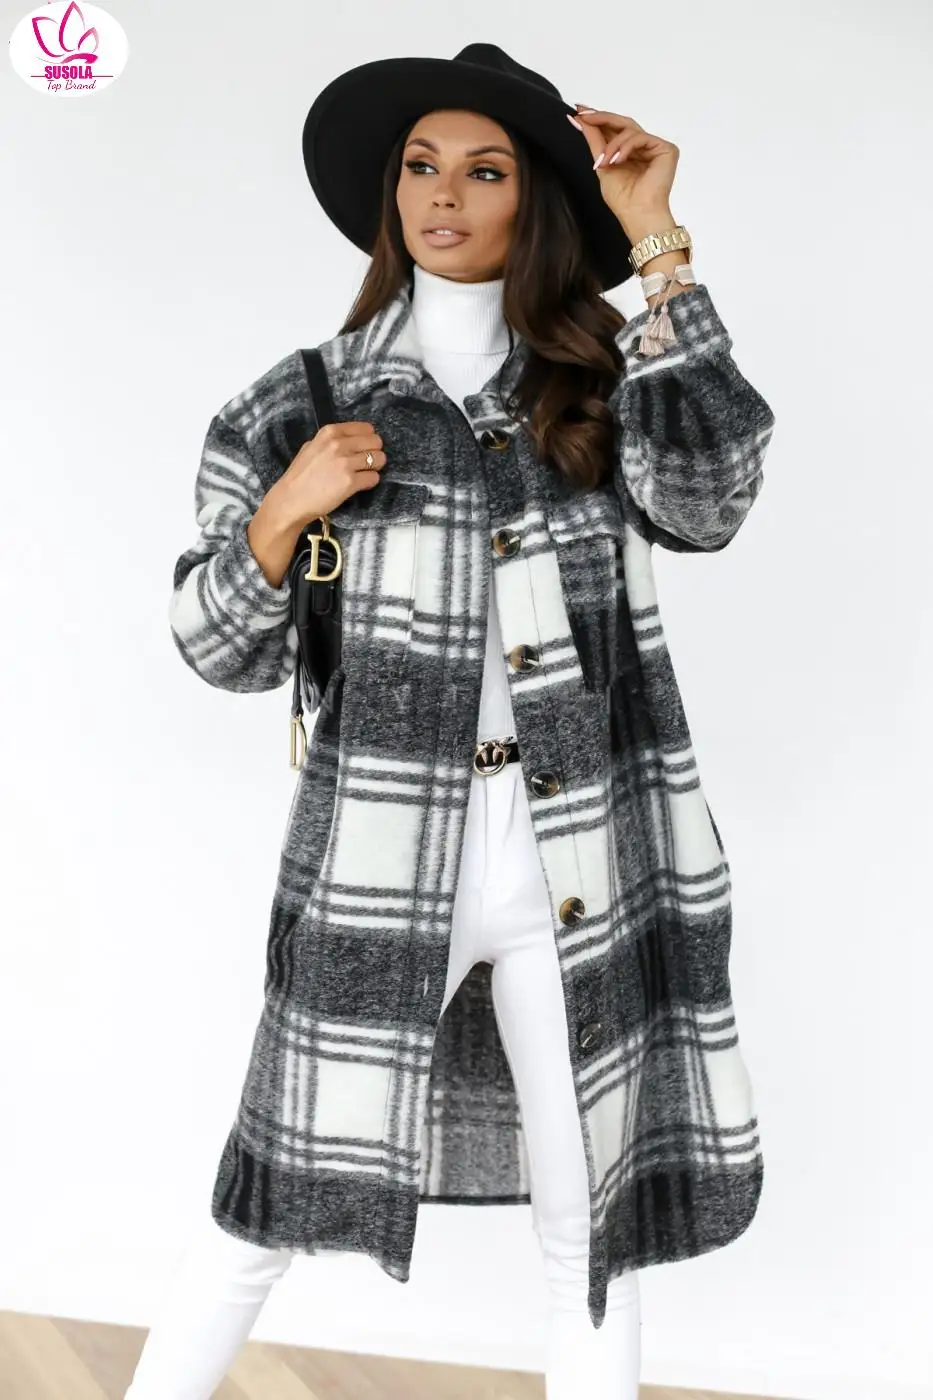 

Женское винтажное шерстяное пальто SUSOLA с лацканами и пуговицами, длинное клетчатое пальто с начесом, клетчатая рубашка, жакет